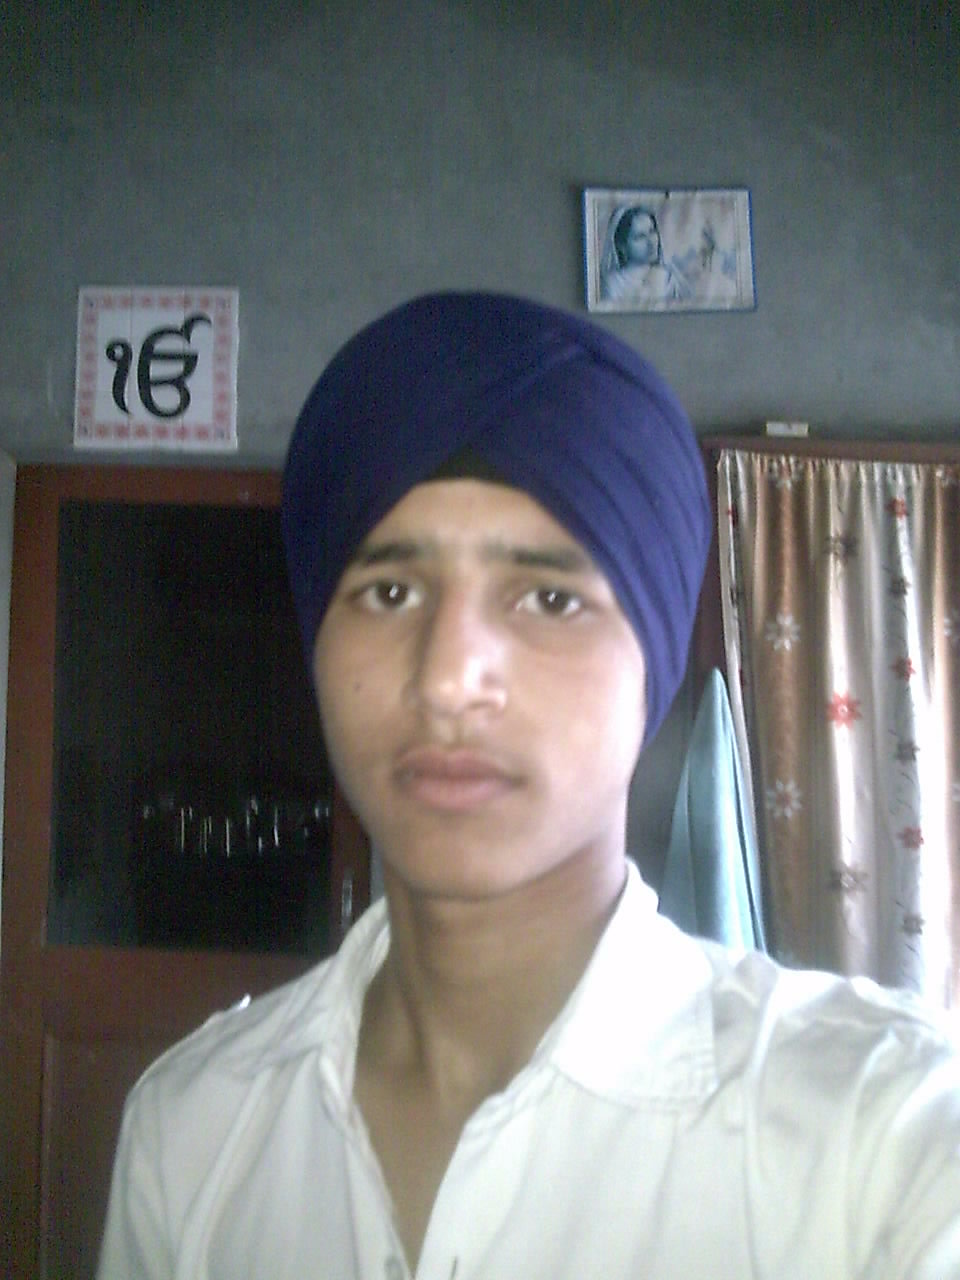 Arshdeep Singh